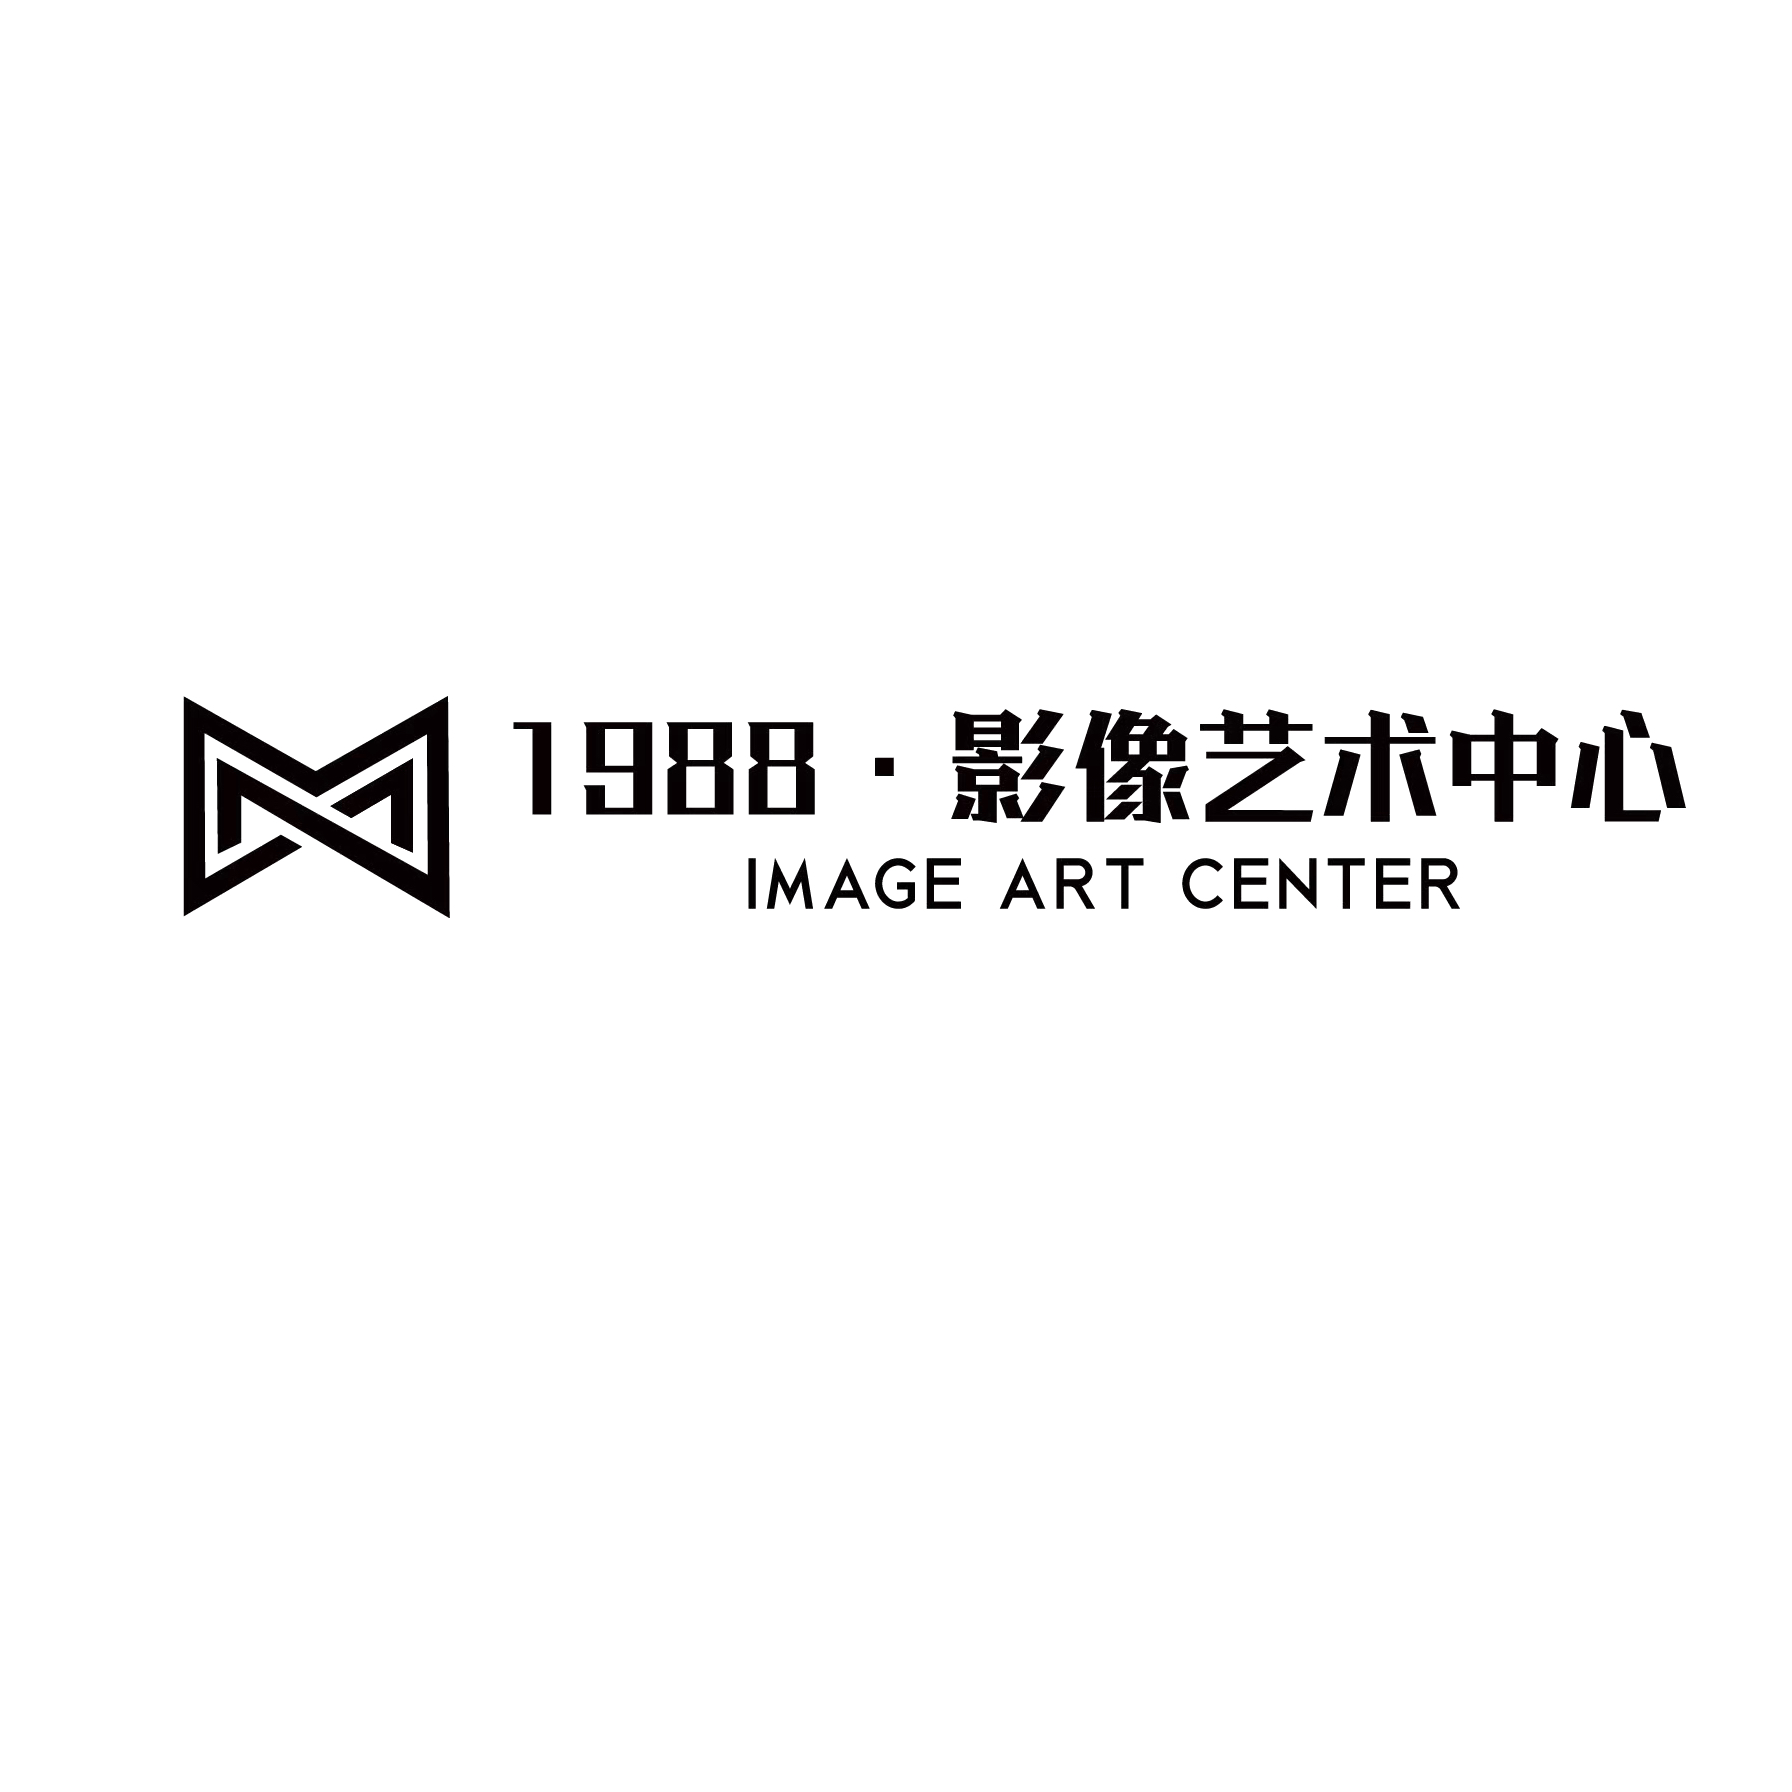 1988影像艺术中心(上海店)